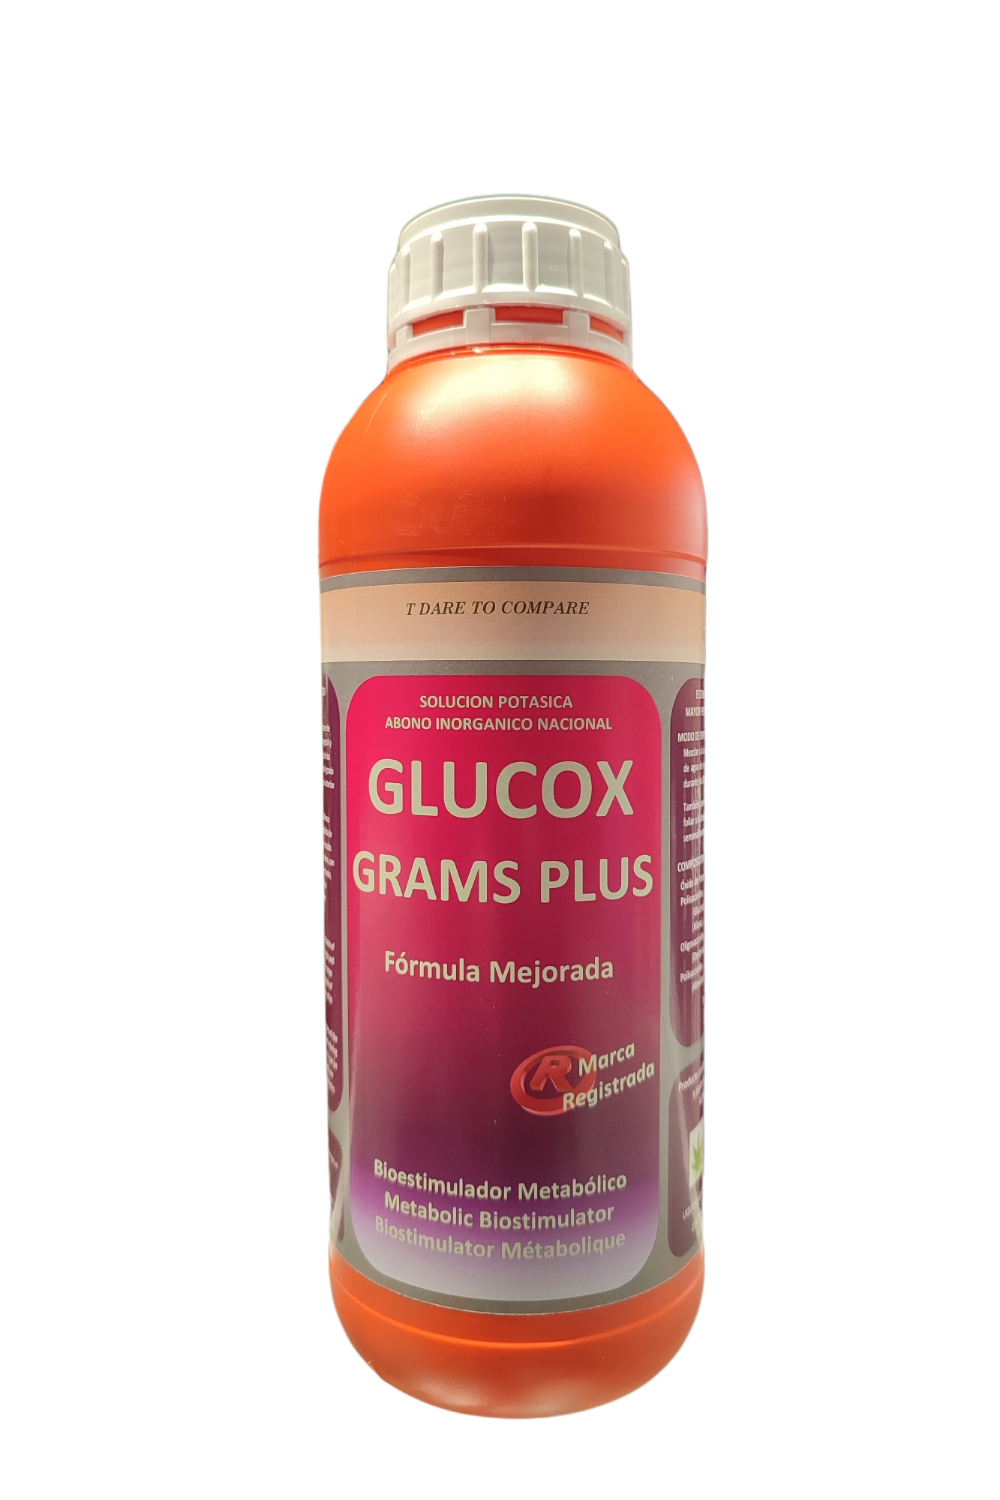 GLUCOX GRAMS PLUS Horticultura Técnica Avanzada, Env. 1 L